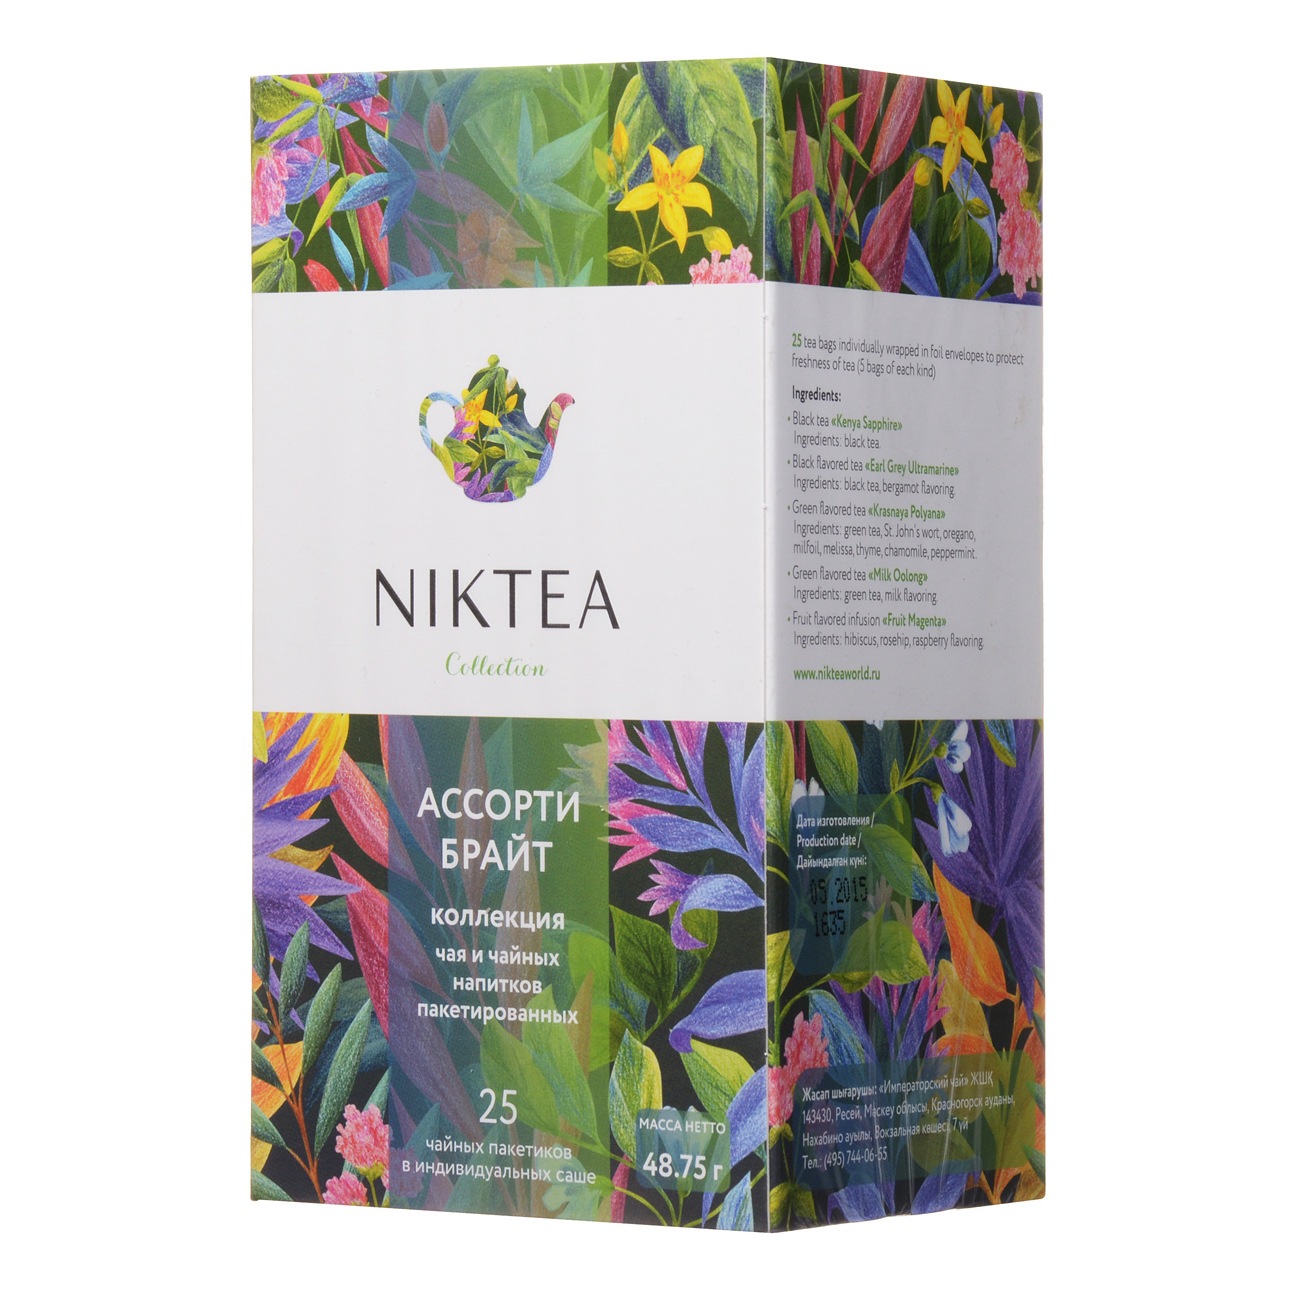 Чайный набор Niktea Ассорти Брайт 25 пакетиков набор чайный olaff флора 2 предмета арт 124 01043